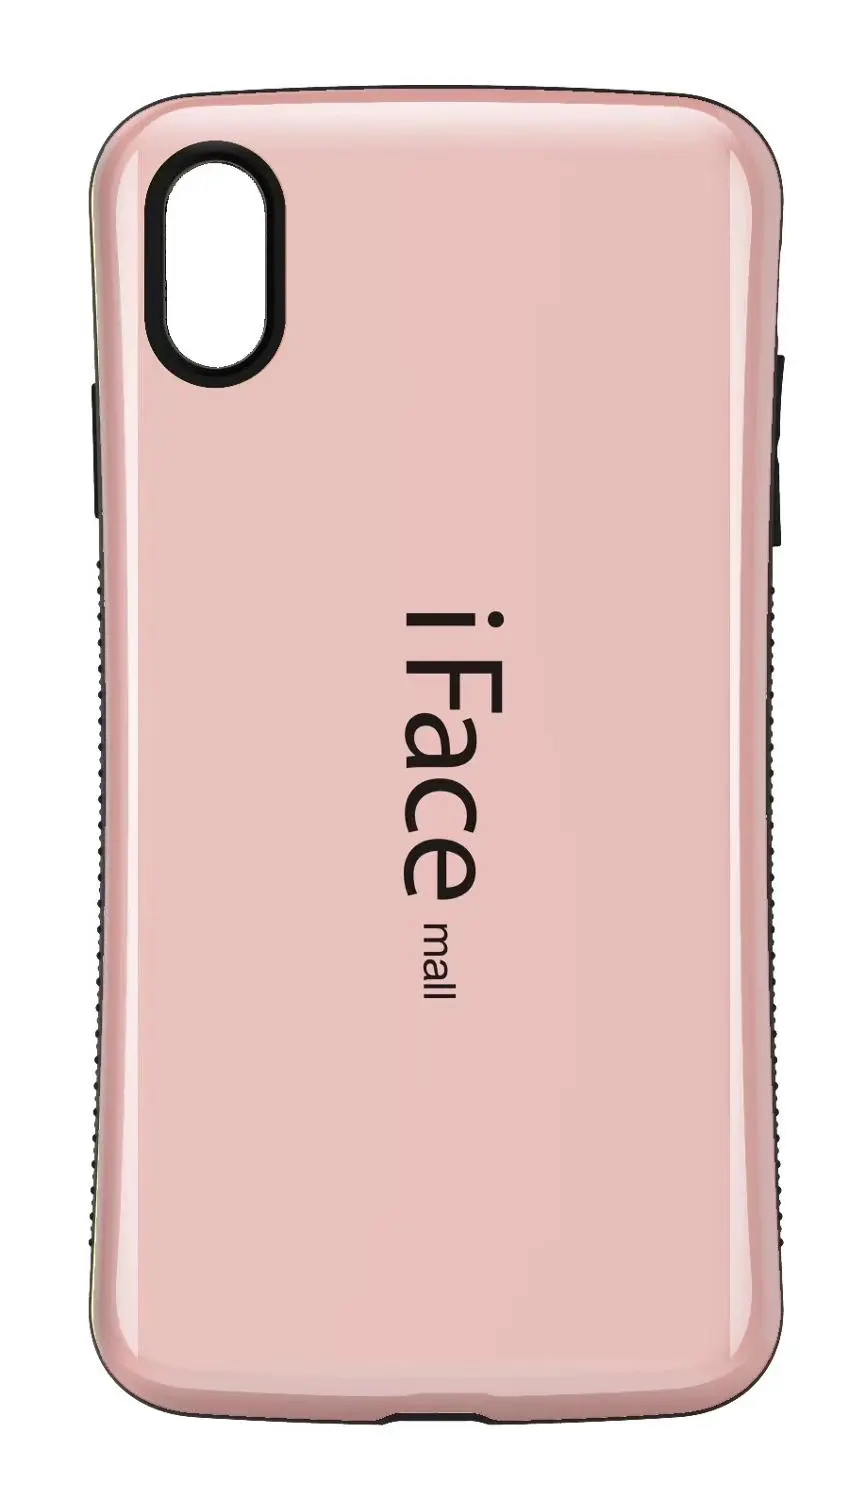 Чехол для Iface mall для iPhone 11 Pro MAX чехол противоударный задняя крышка Гибридный ТПУ+ PC для iPhone 11 Pro MAX чехол для телефона - Цвет: Rose Gold